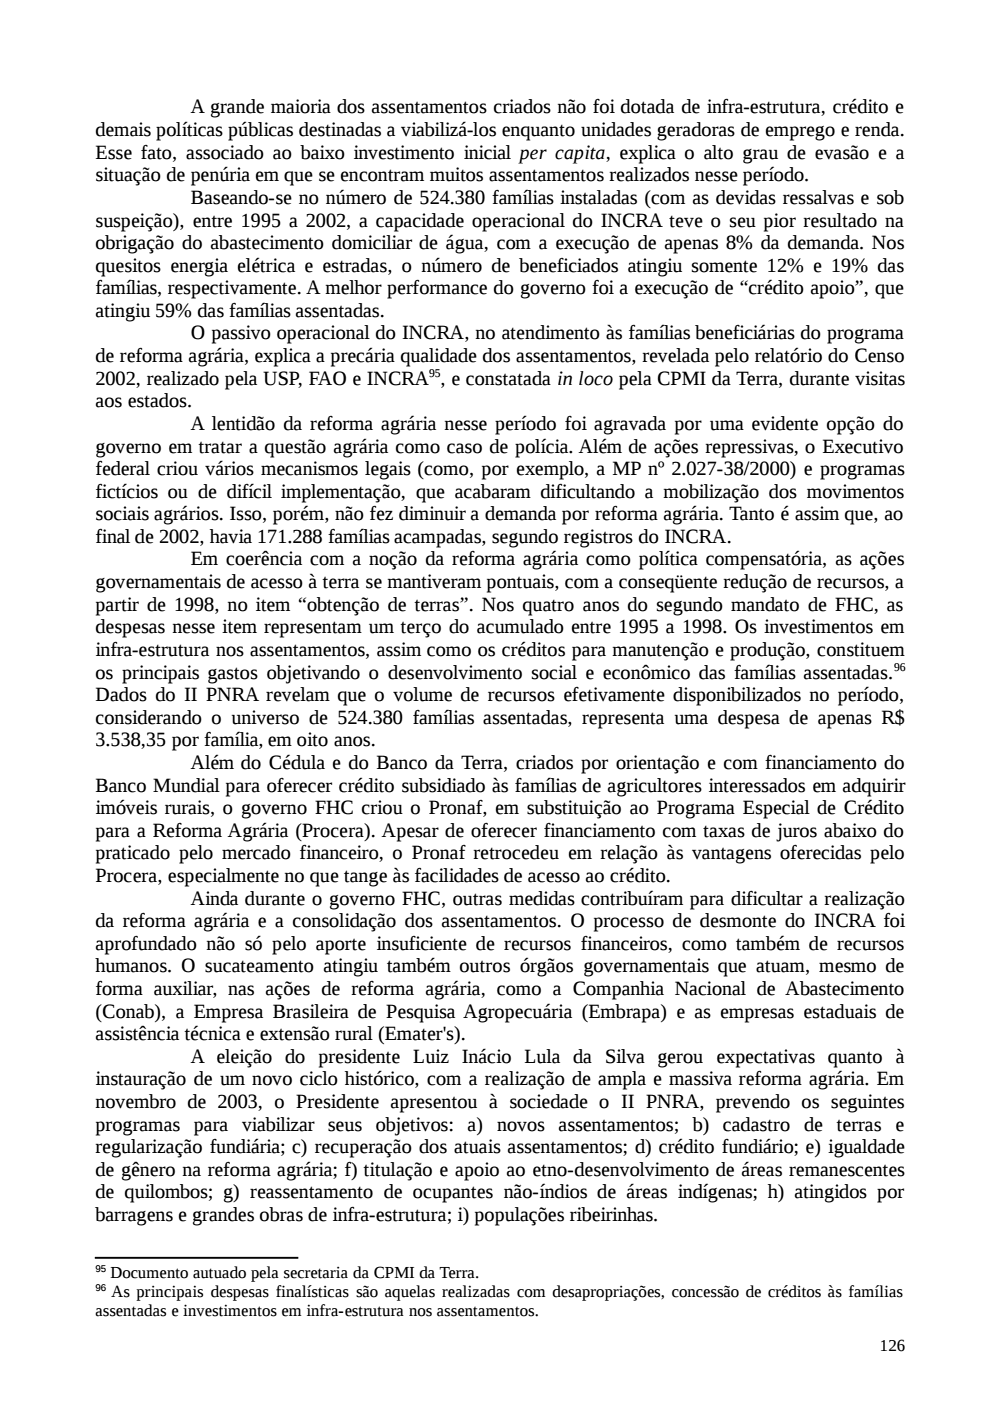 Page 126 from Relatório final da comissão